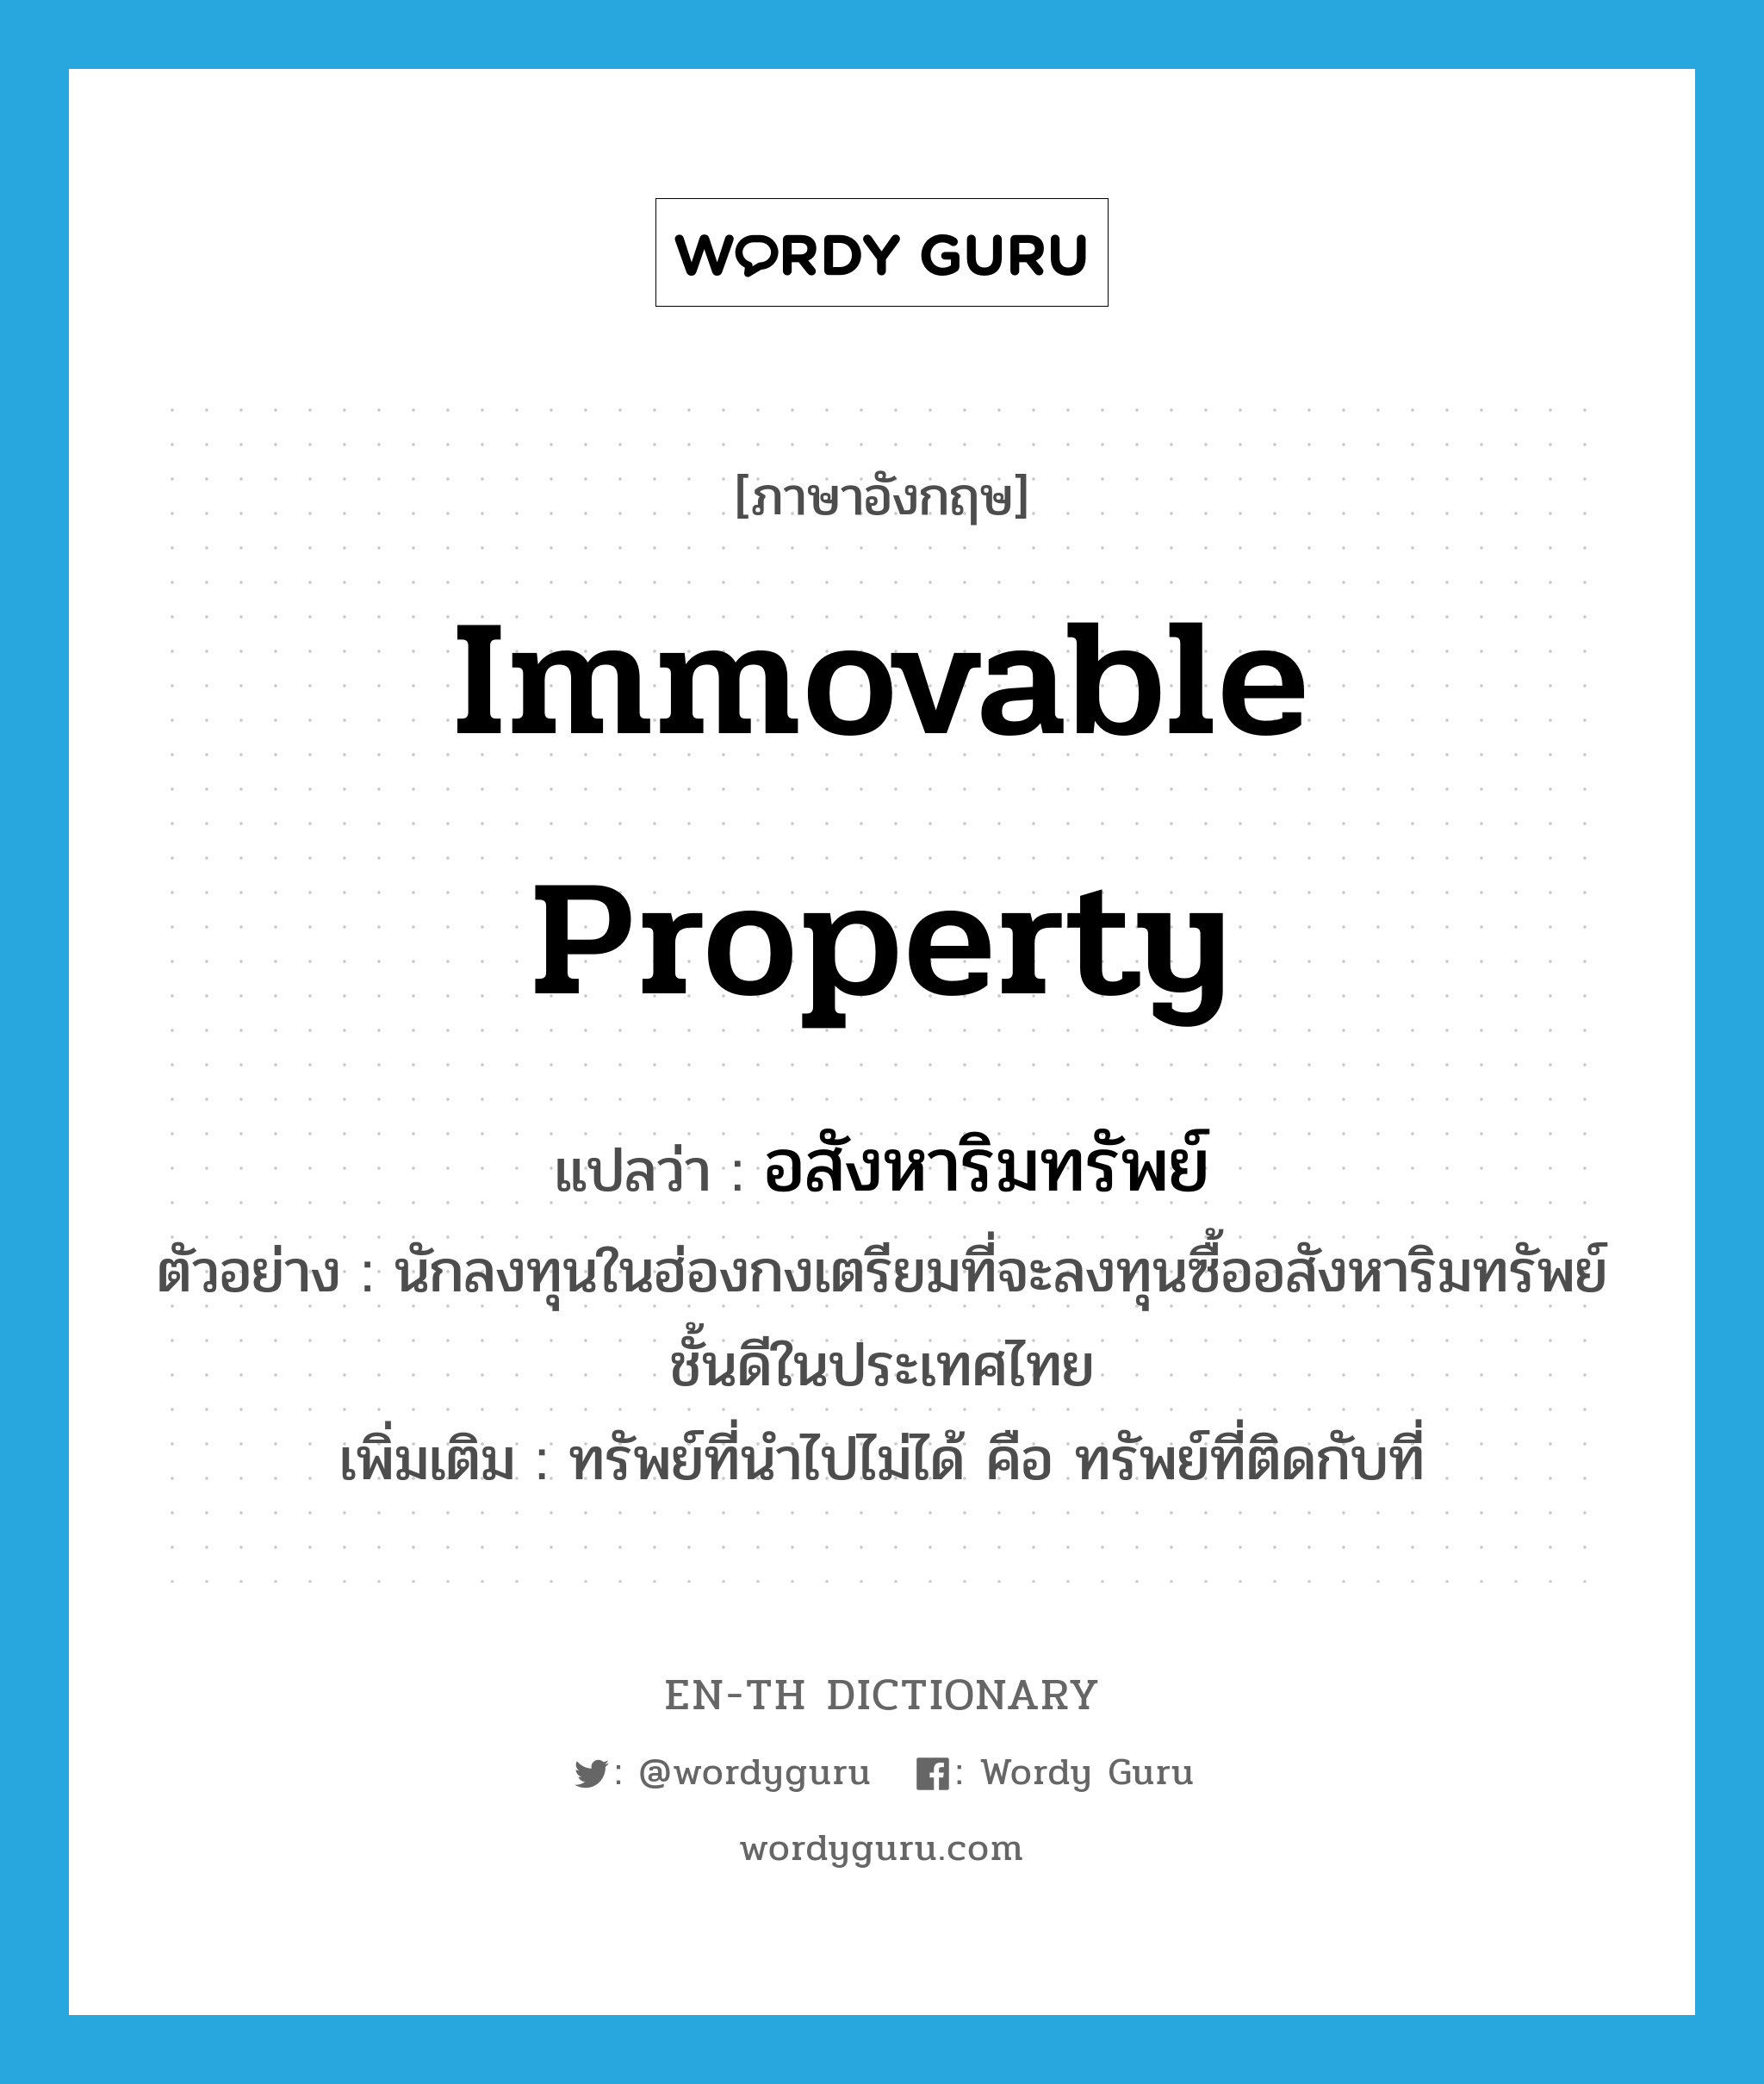 immovable property แปลว่า?, คำศัพท์ภาษาอังกฤษ immovable property แปลว่า อสังหาริมทรัพย์ ประเภท N ตัวอย่าง นักลงทุนในฮ่องกงเตรียมที่จะลงทุนซื้ออสังหาริมทรัพย์ชั้นดีในประเทศไทย เพิ่มเติม ทรัพย์ที่นำไปไม่ได้ คือ ทรัพย์ที่ติดกับที่ หมวด N